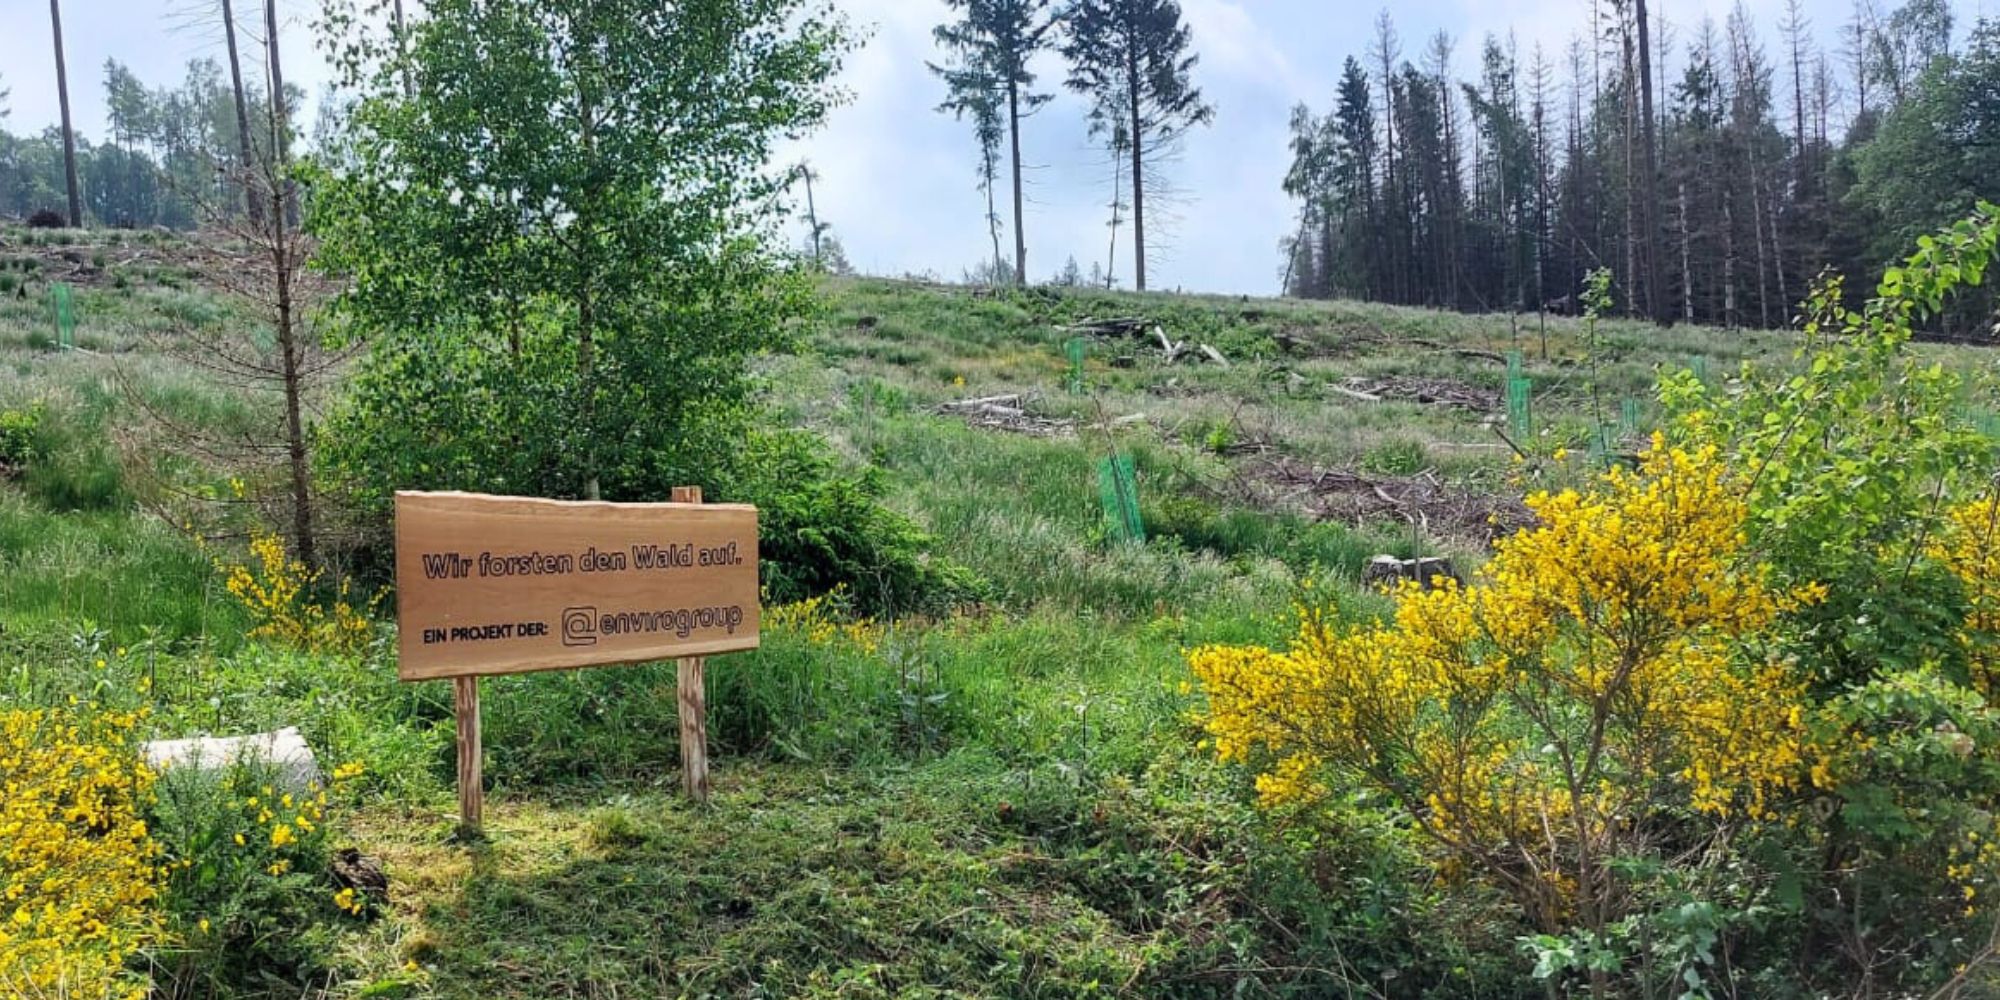 envirogroup Schild im Wald mit der Aufschrift "wir forsten auf, ein Projekt der envirogroup"